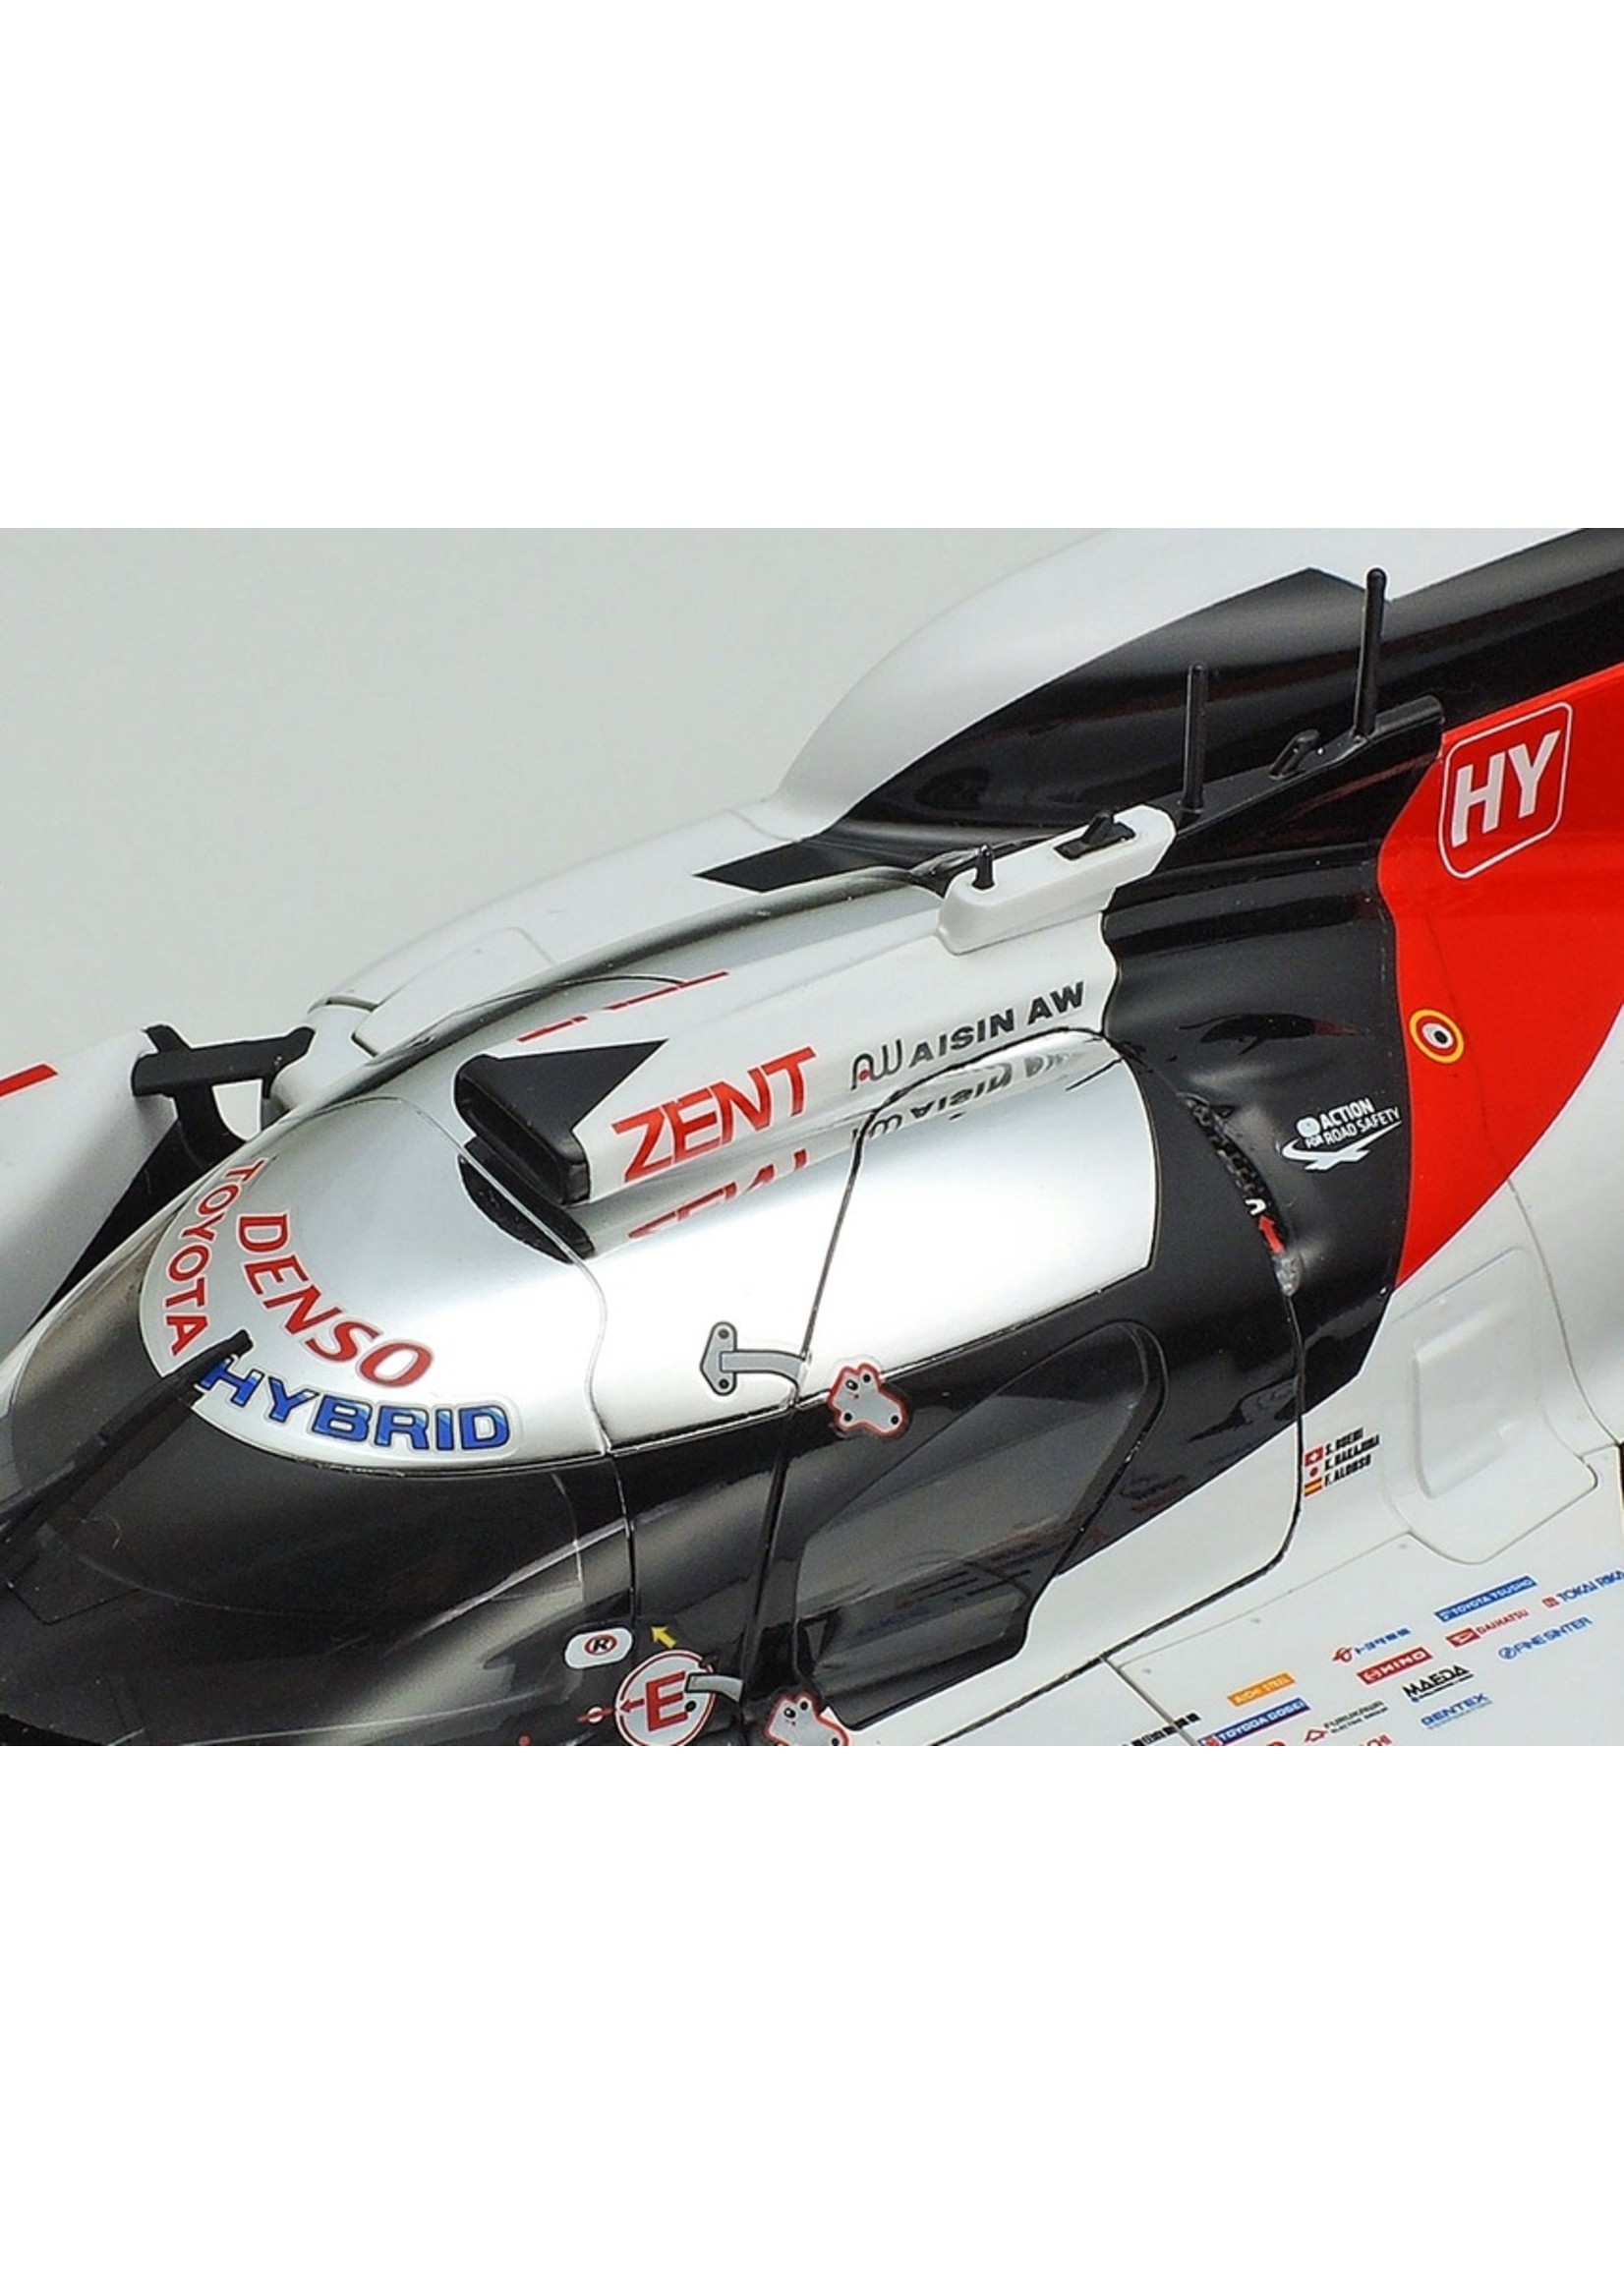 Tamiya 24349 - 1/24 Toyota Gazoo Racing TS050 Hybrid